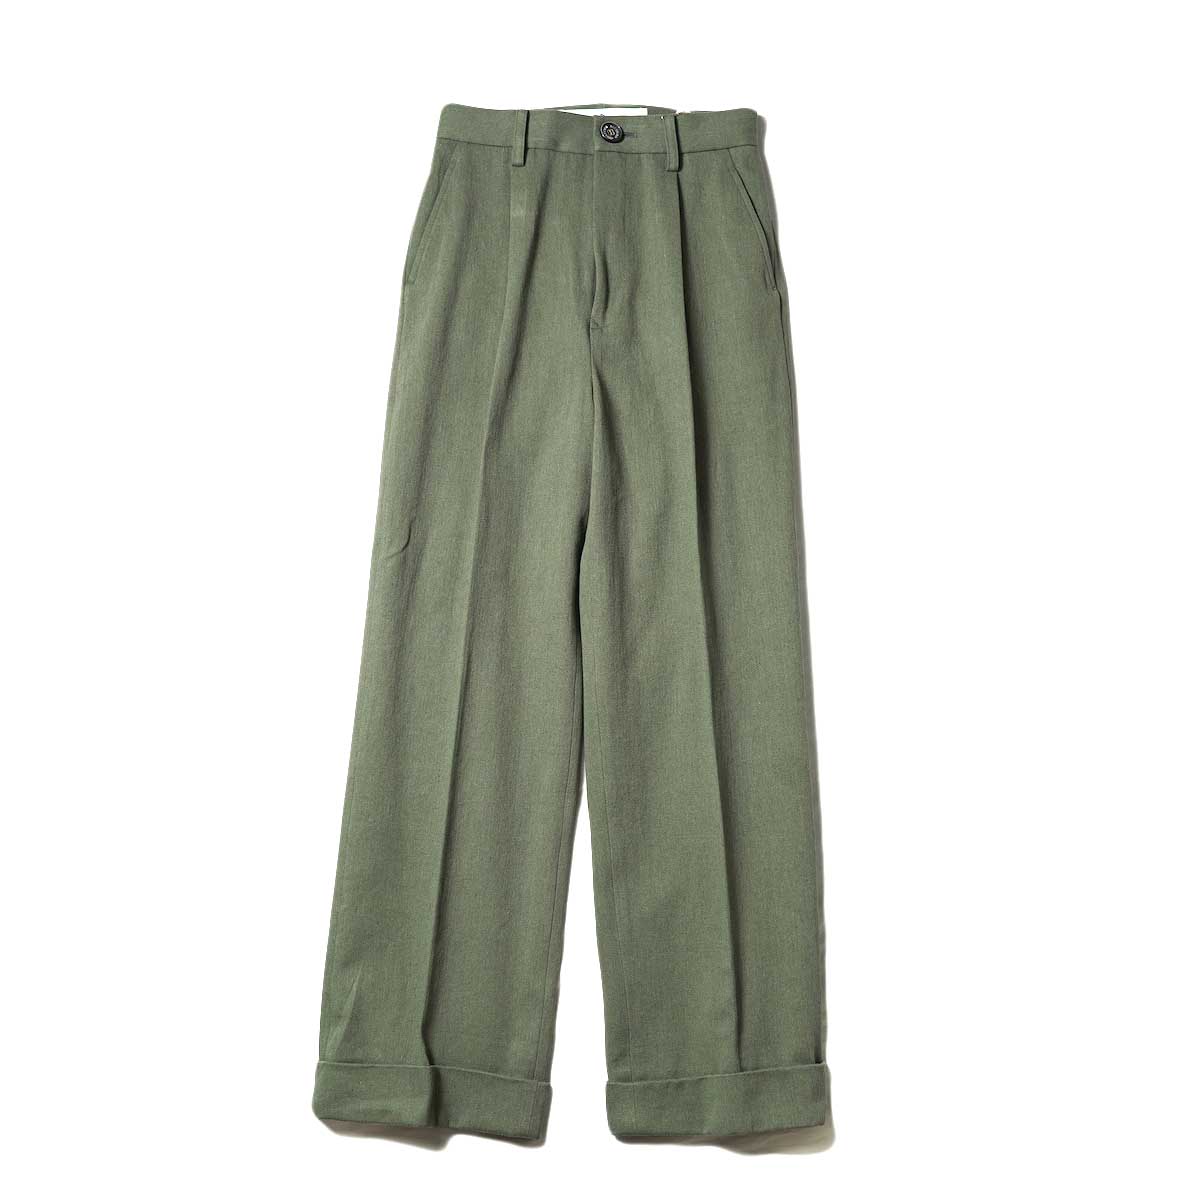 BLUEBIRD BOULEVARD / Cotton Linen Twill High Waisted Pants (Green)